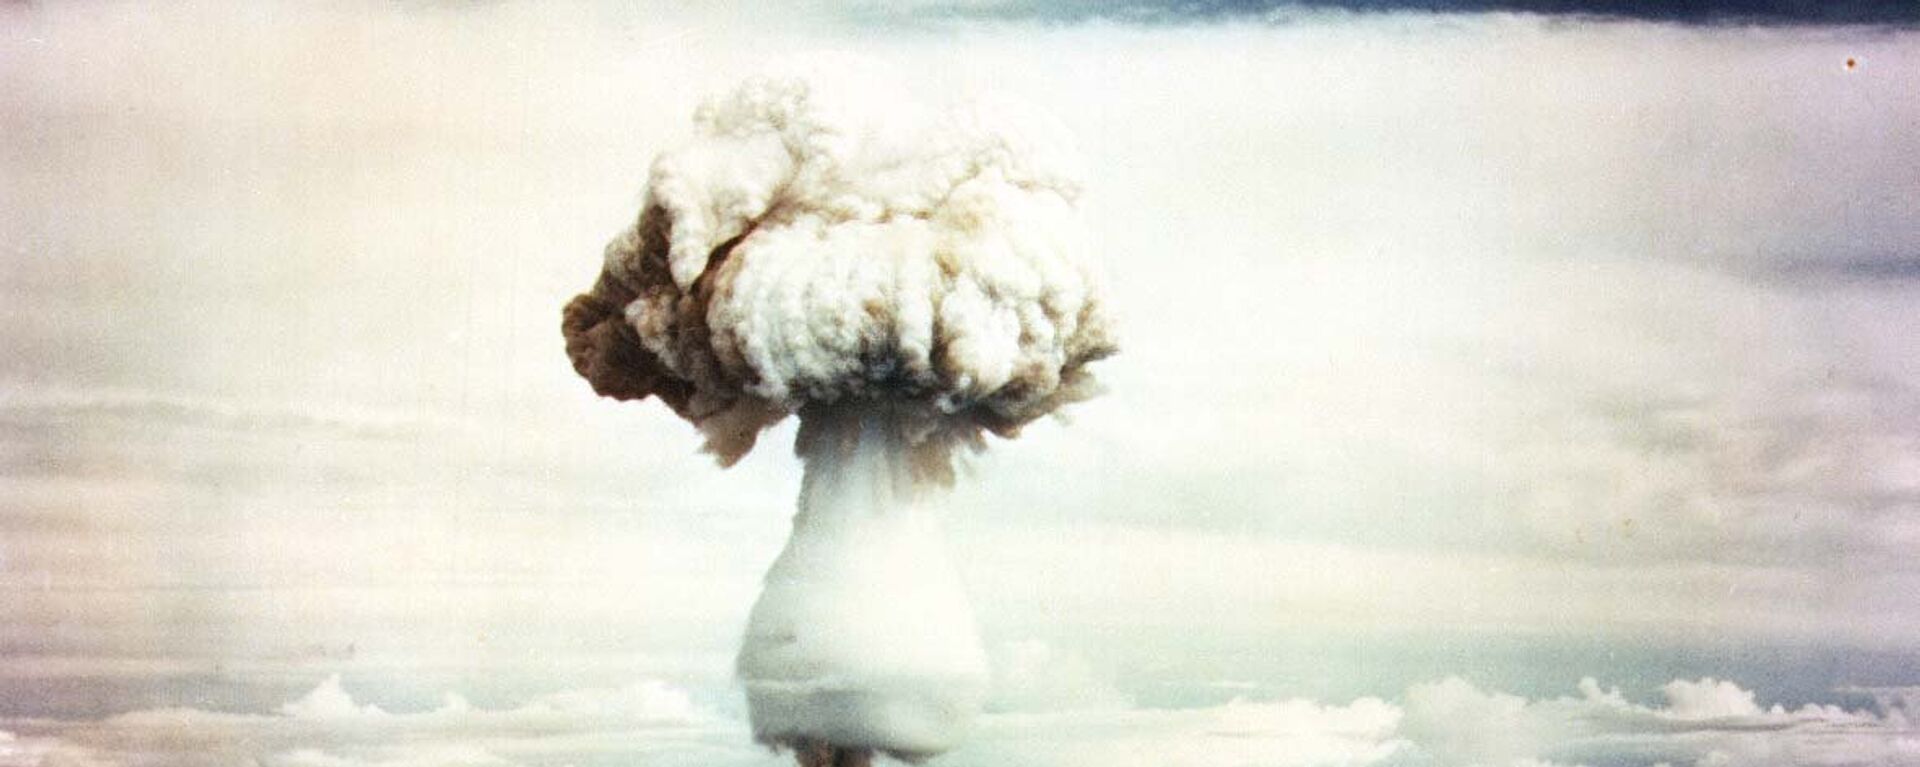 Nube de hongo tras la explosión de una bomba nuclear - Sputnik Mundo, 1920, 31.10.2021